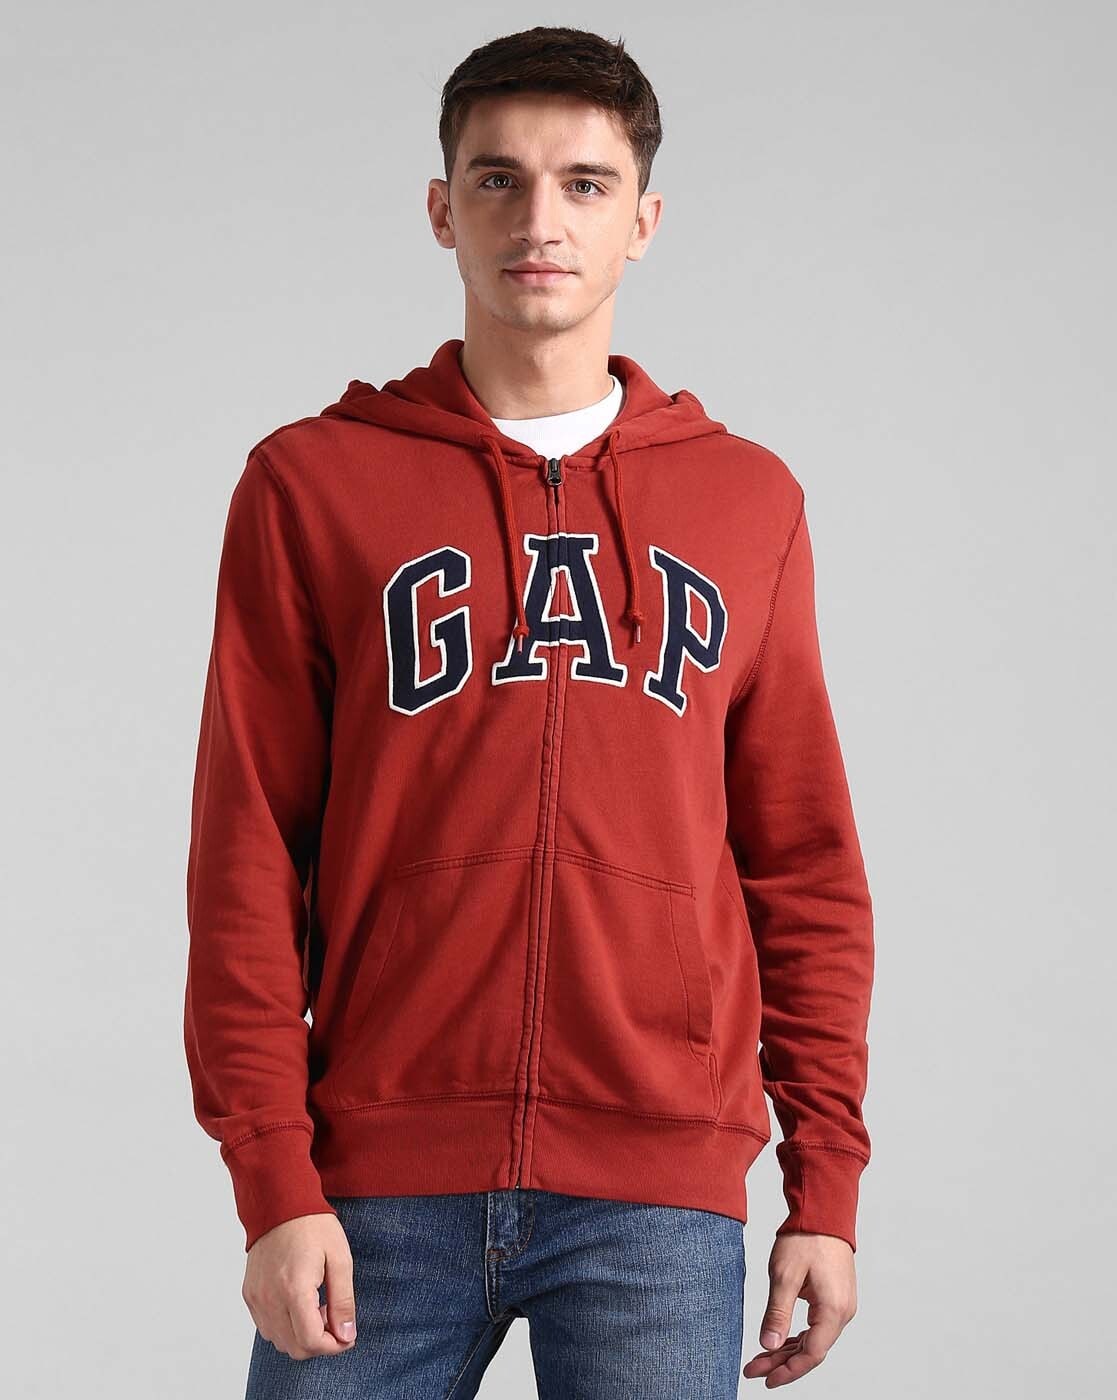 gap pullover hoodie india